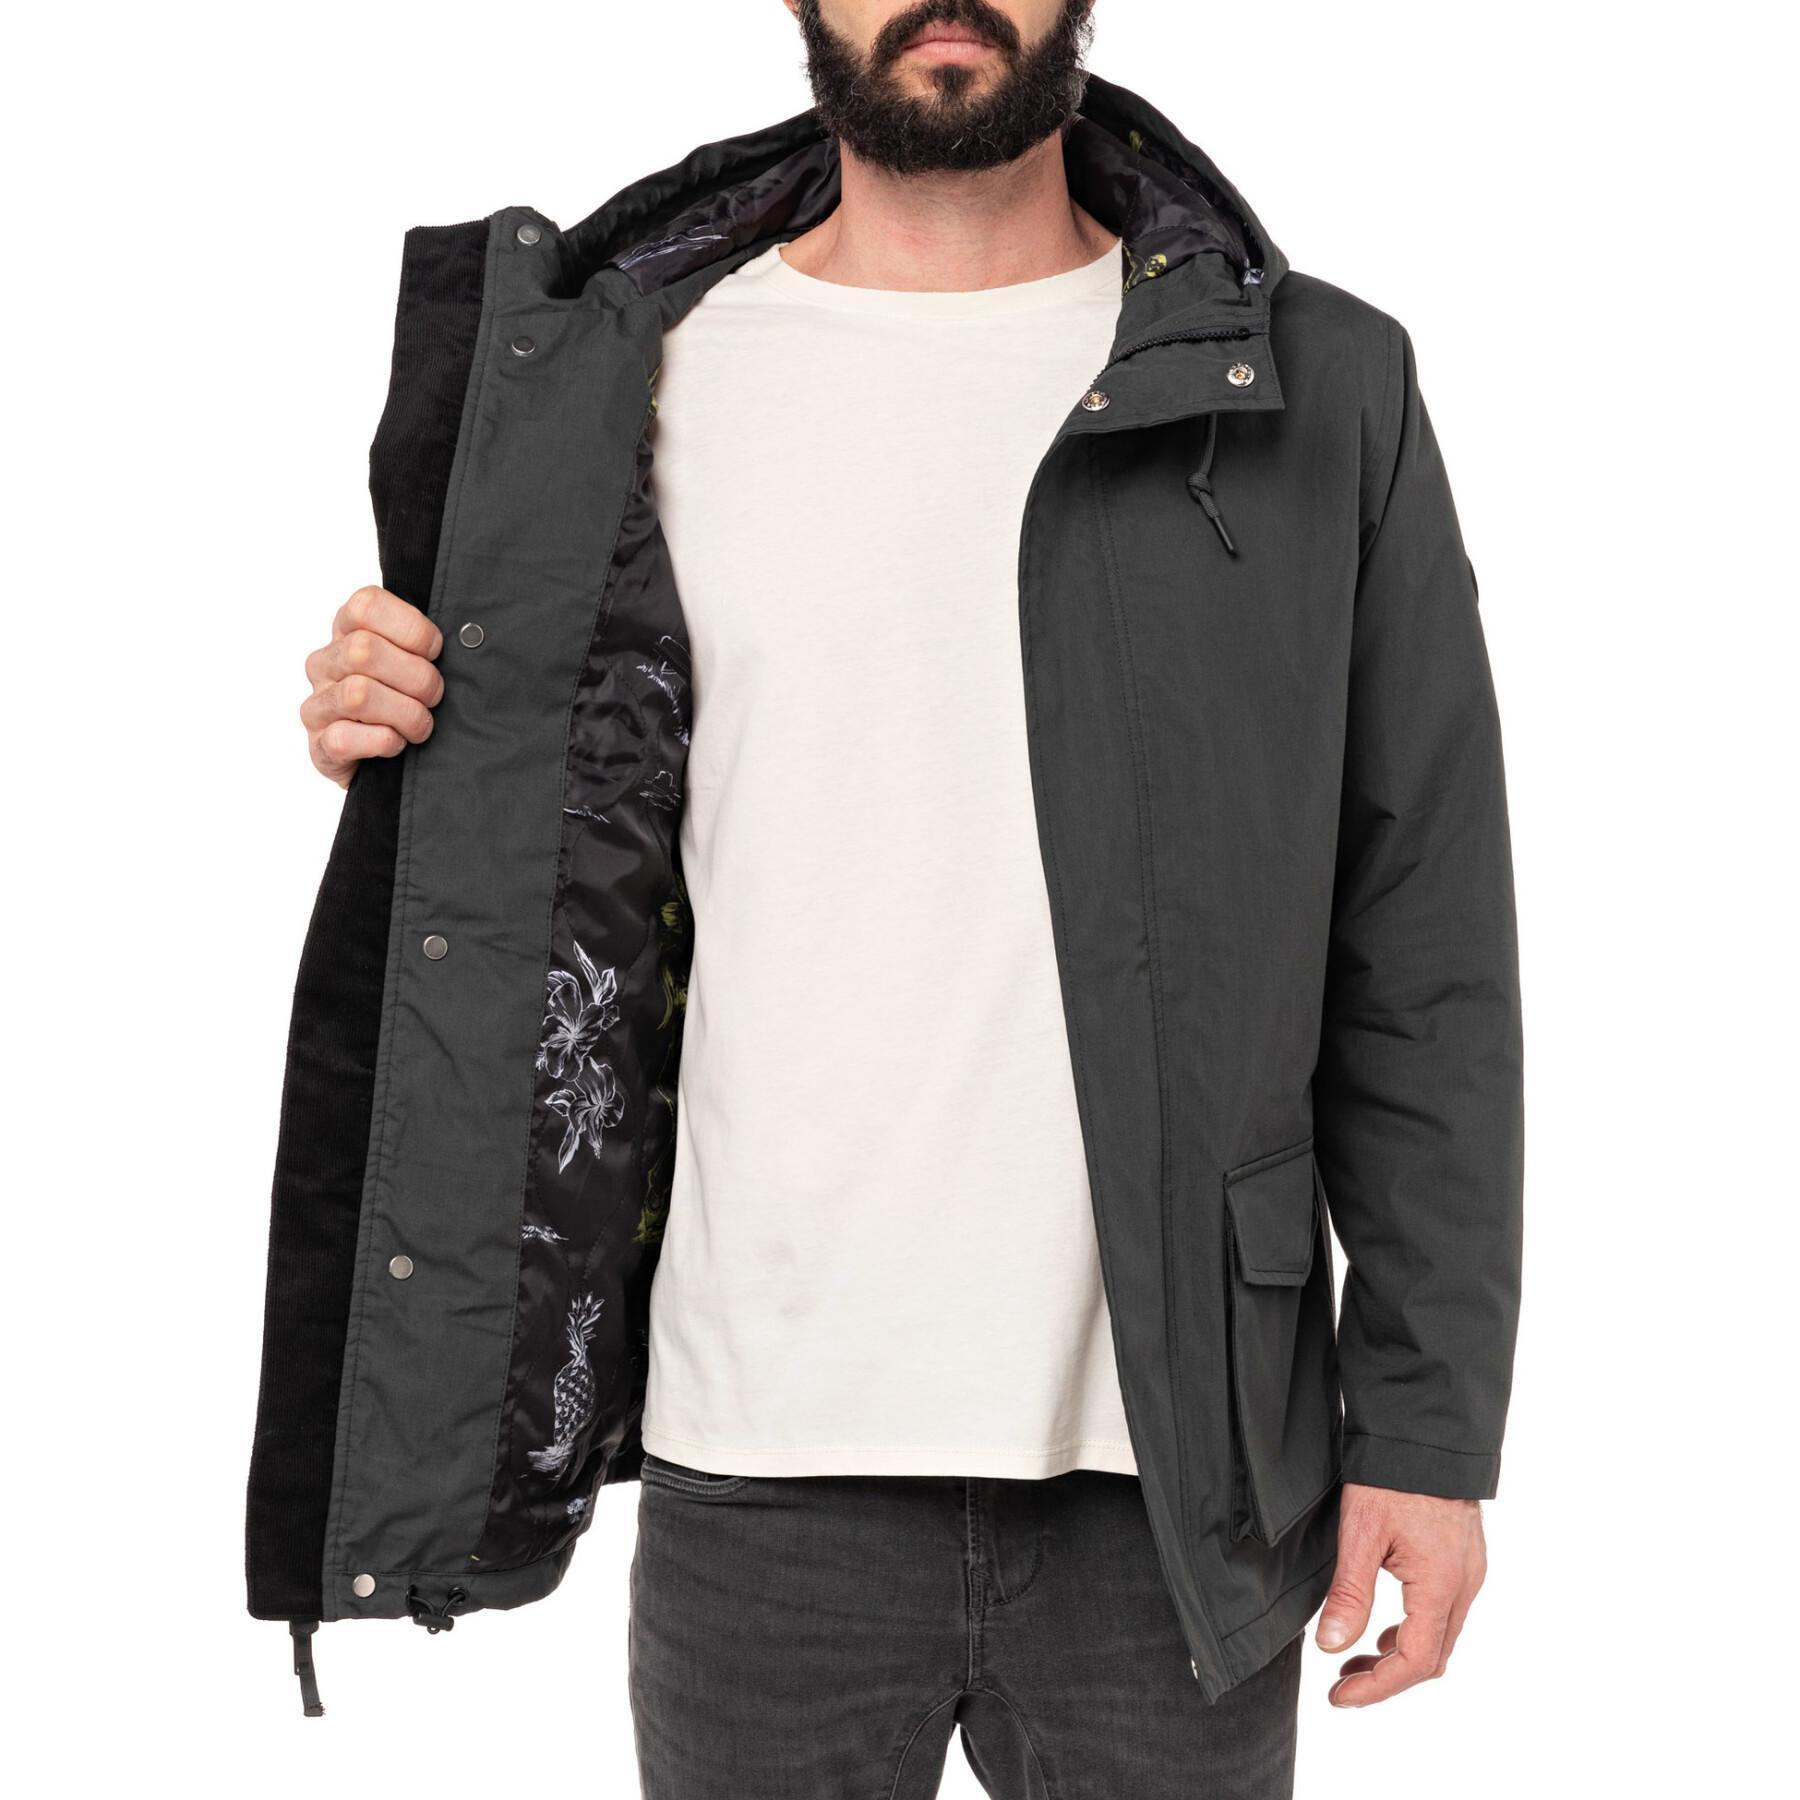 Waterproof jacket Pull-in darktropic